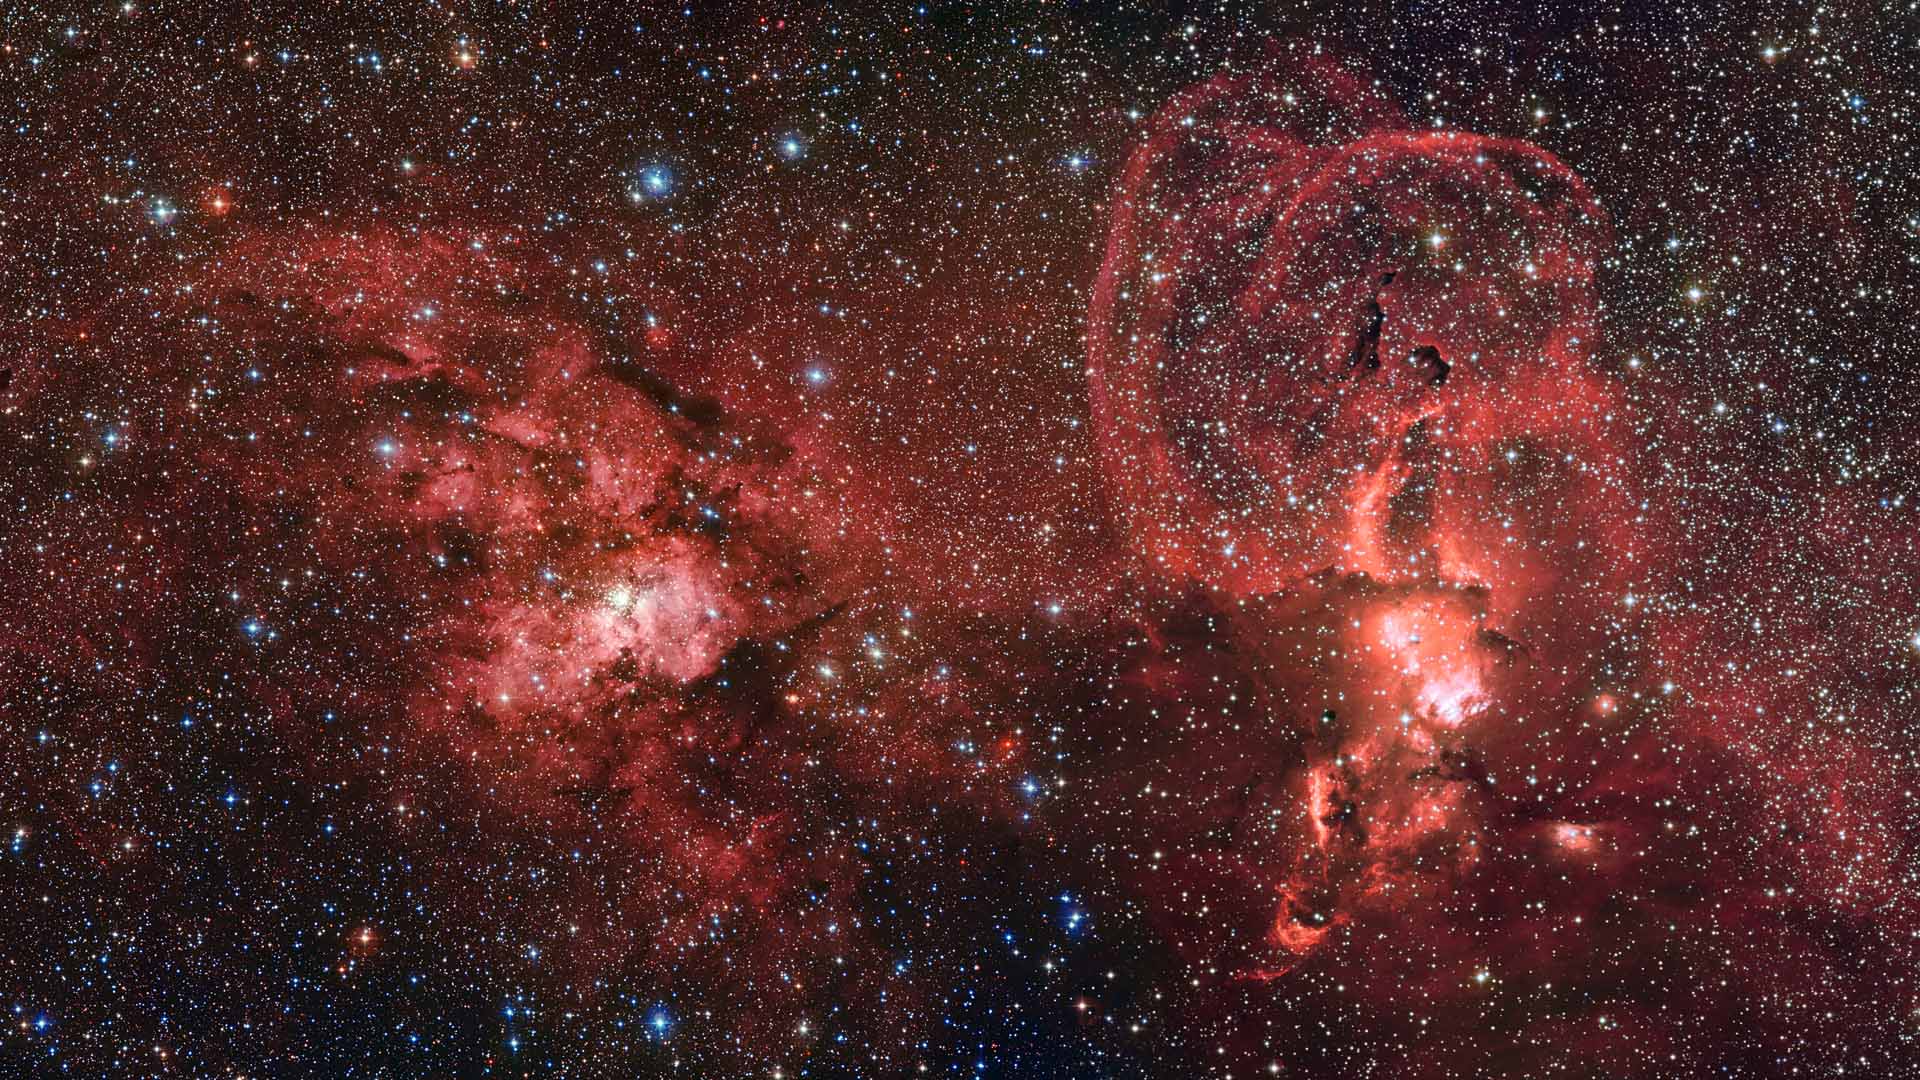 Image by ESO/G. Beccari via space.com